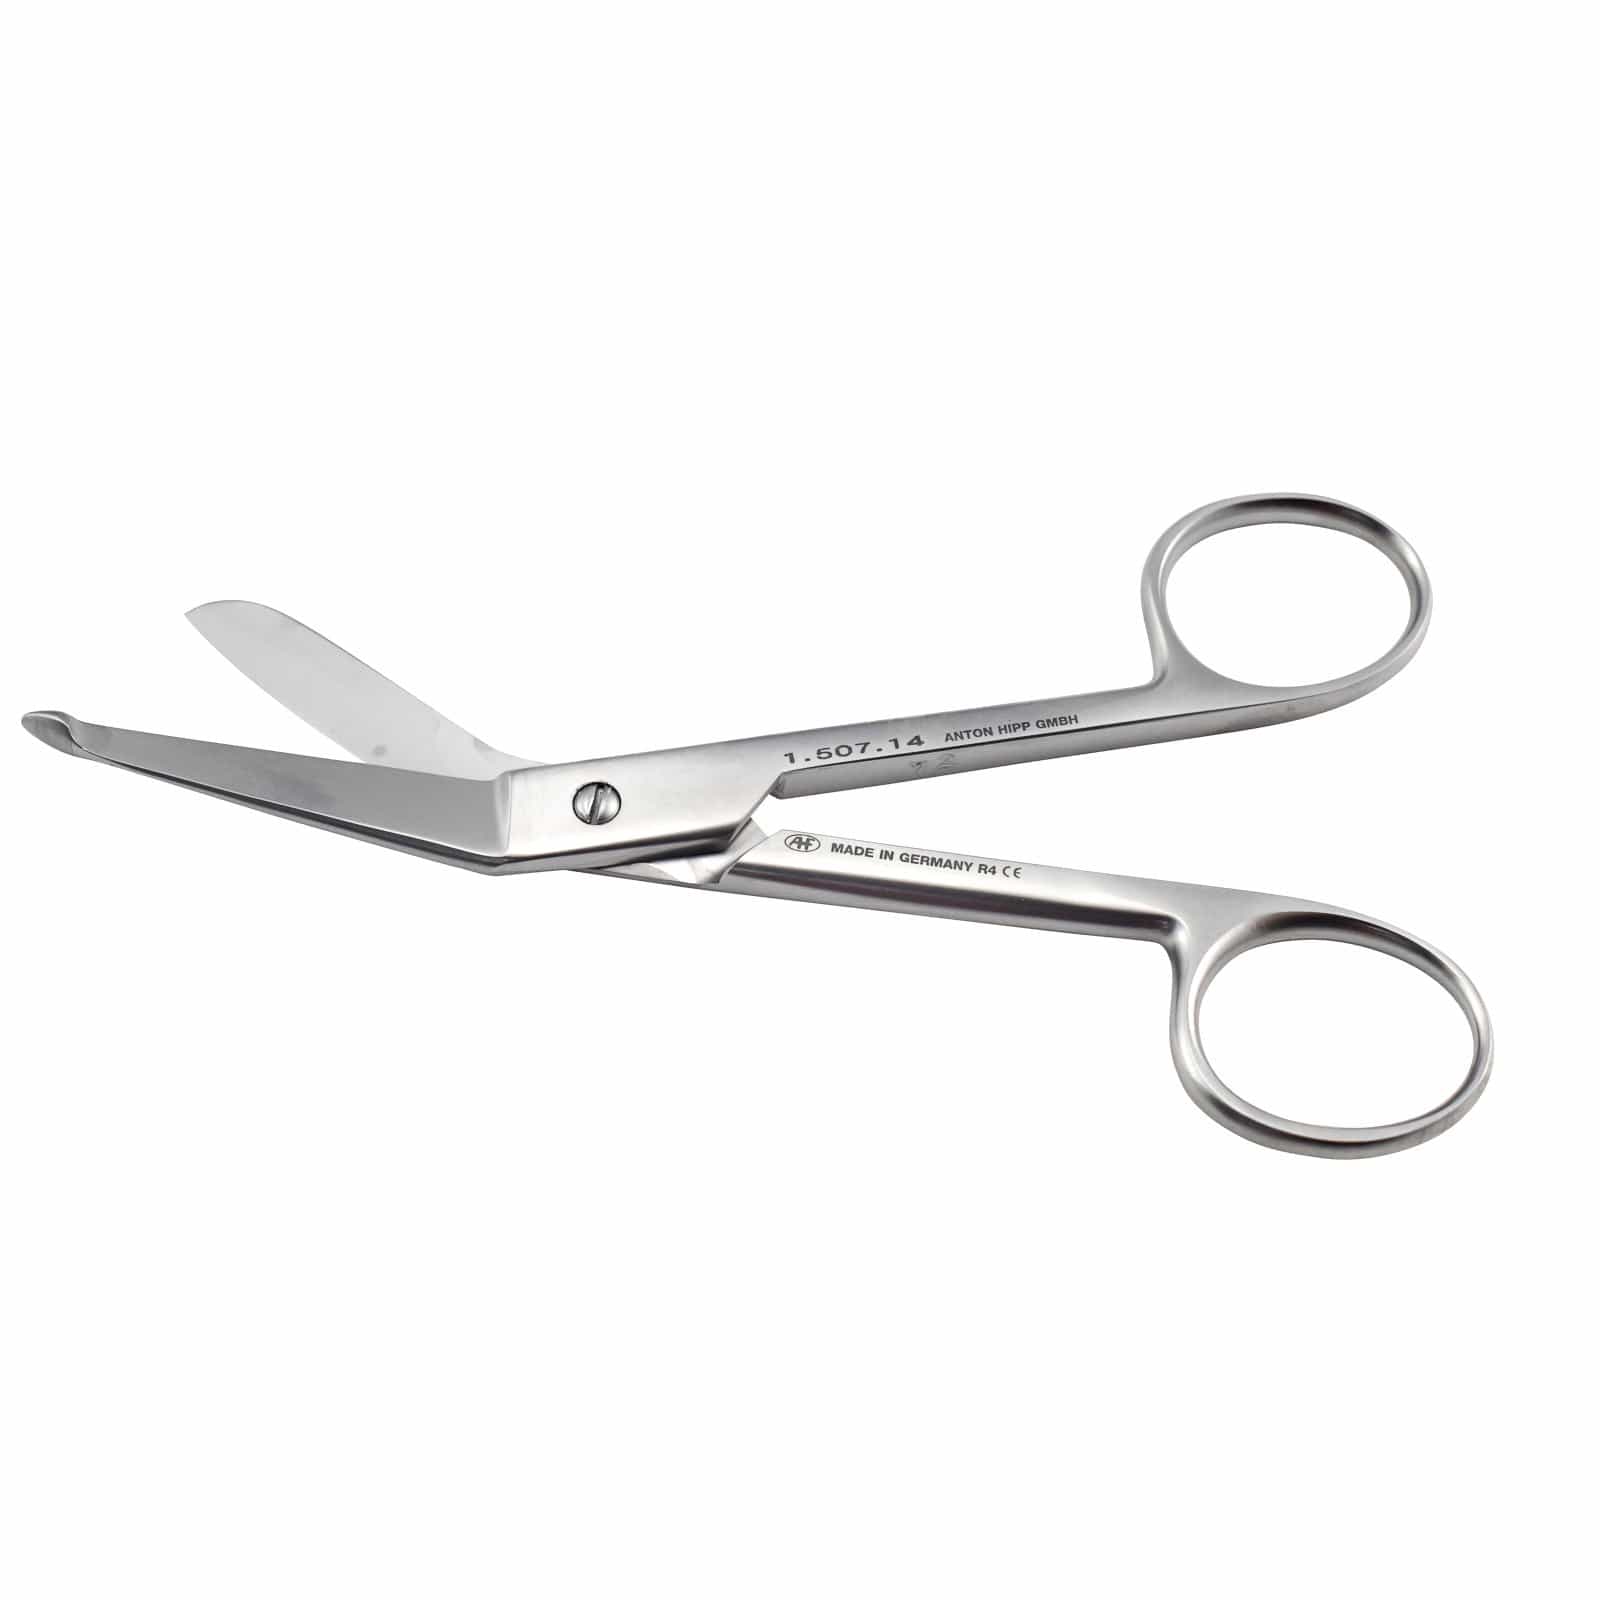 Hipp Surgical Instruments 14cm Hipp Lister Bandage Scissors